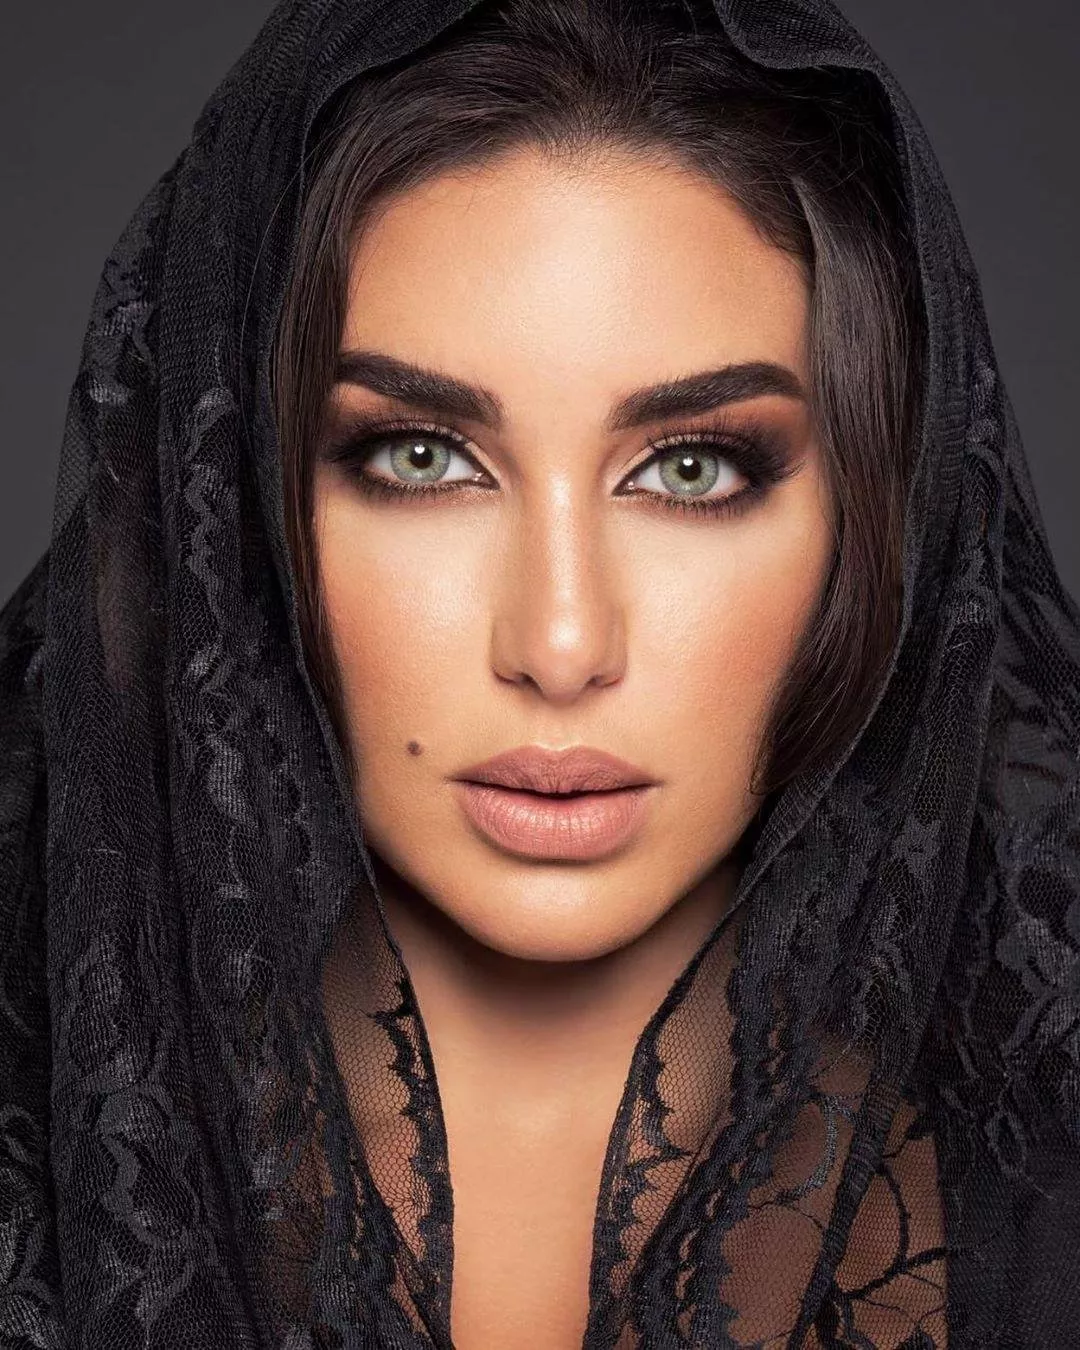 موجة جديدة في عالم الجمال: النجمات العربيات يتعاونّ مع ماركات عدسات لاصقة في الآونة الأخيرة